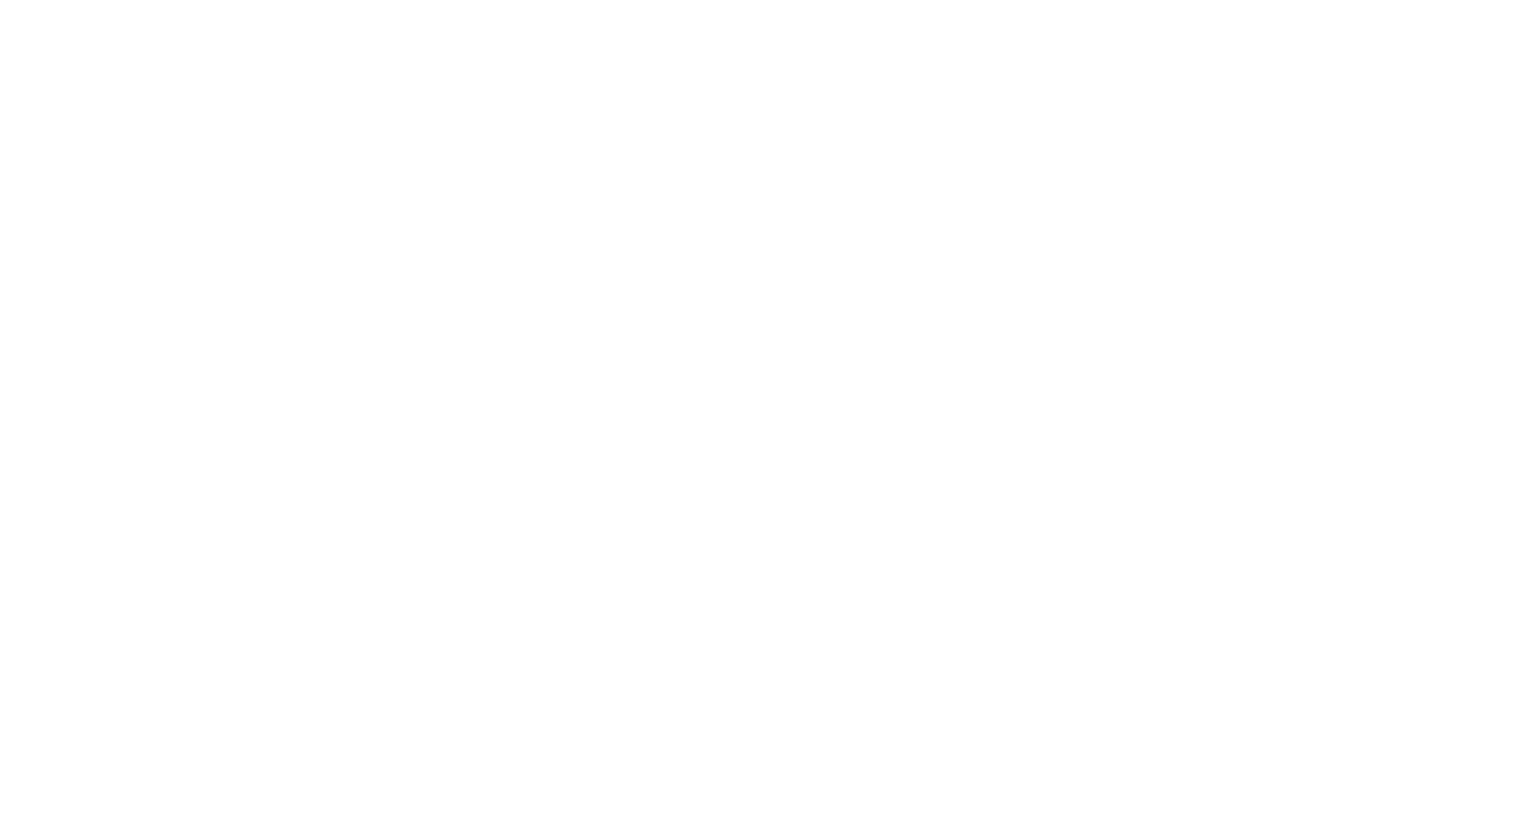 TTG LGBT+ Seminar 2023